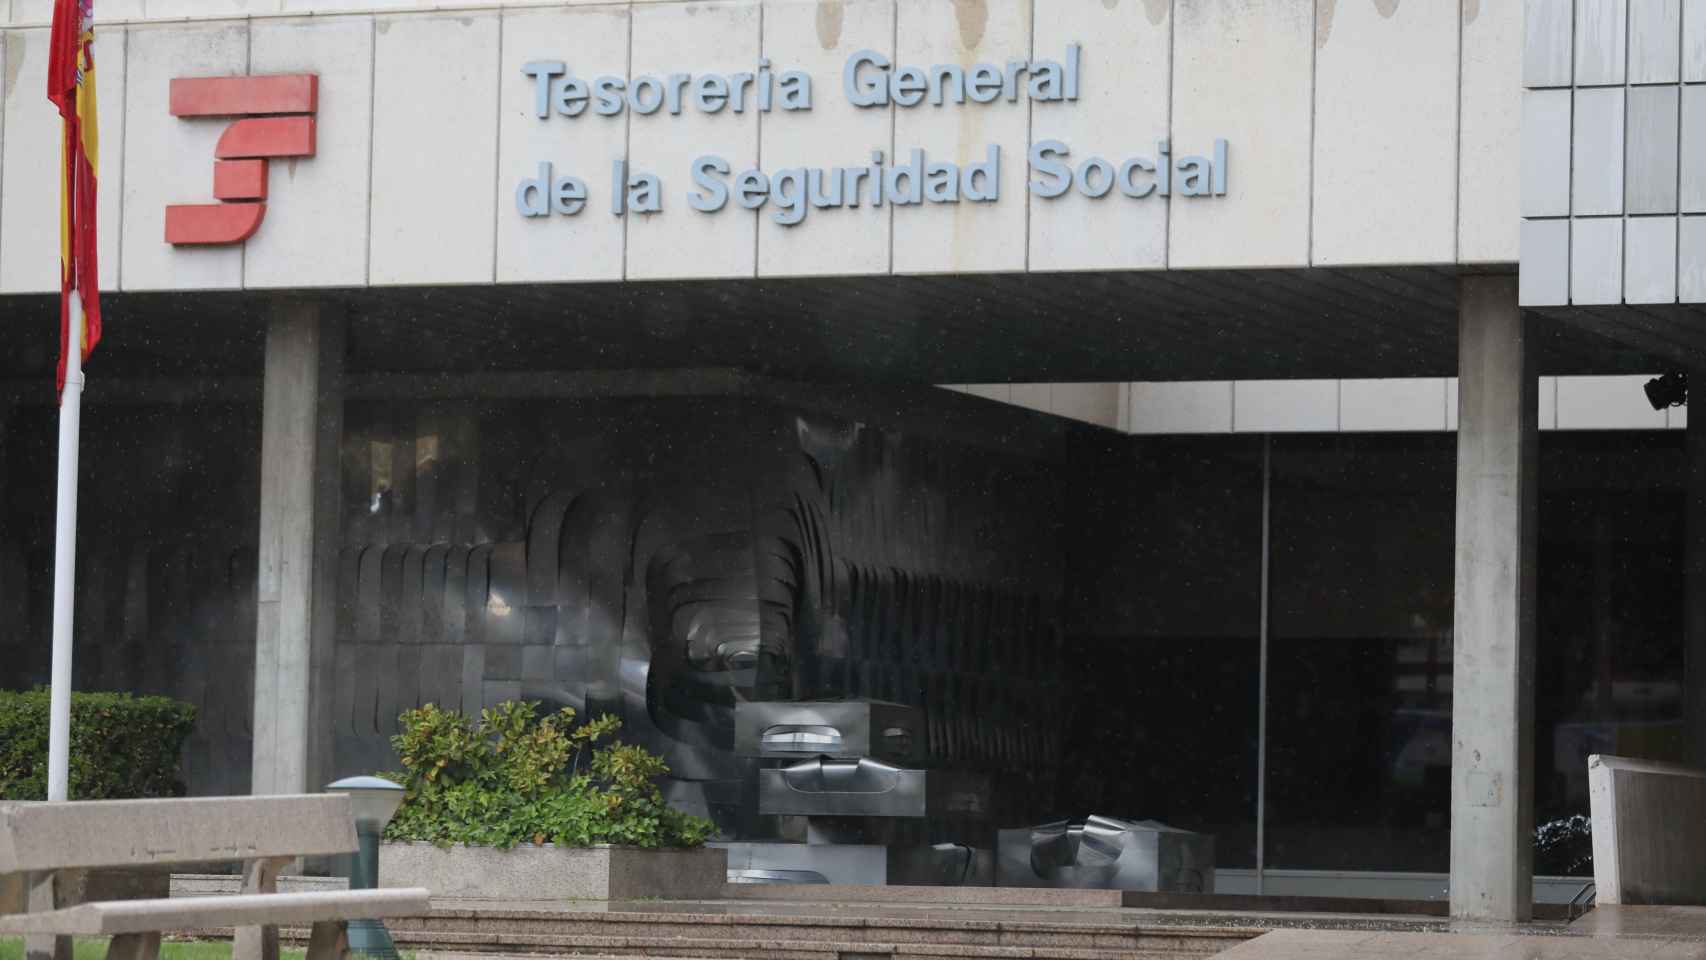 Tesorería General de la Seguridad Social.